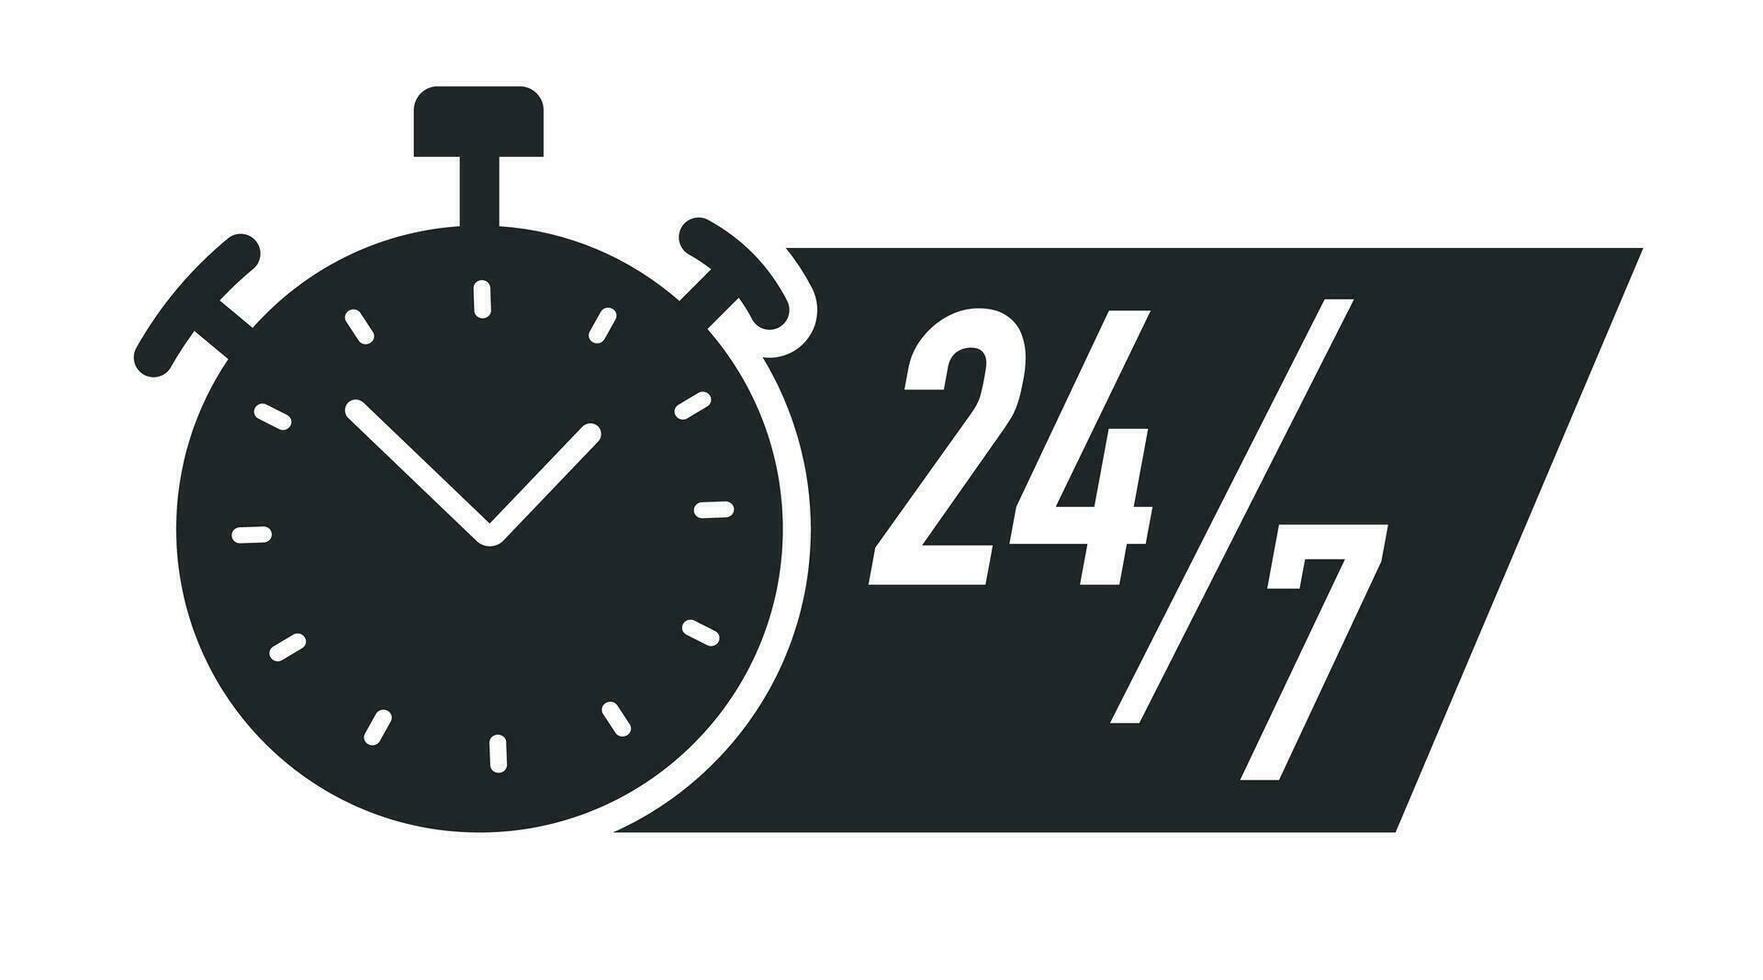 24 7 7 horas Temporizador vector símbolo negro color